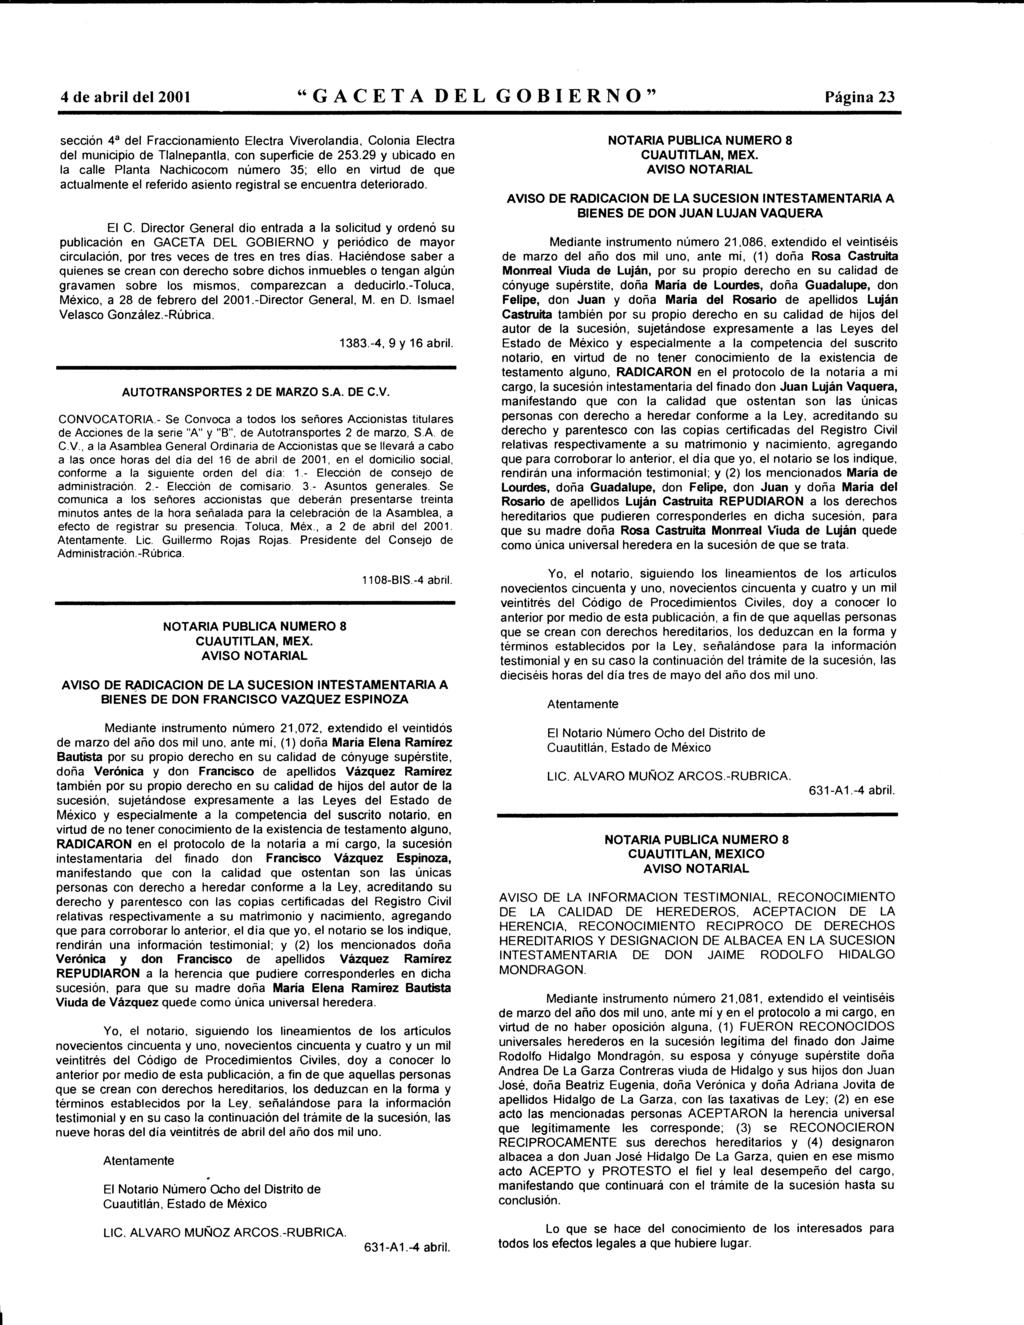 4 de abril del 2001 "GACETA DEL GOBIERNO" Página 23 sección 4a del Fraccinamient Electra Viverlandia, Clnia Electra del municipi de Tlalnepantla, cn superficie de 253.